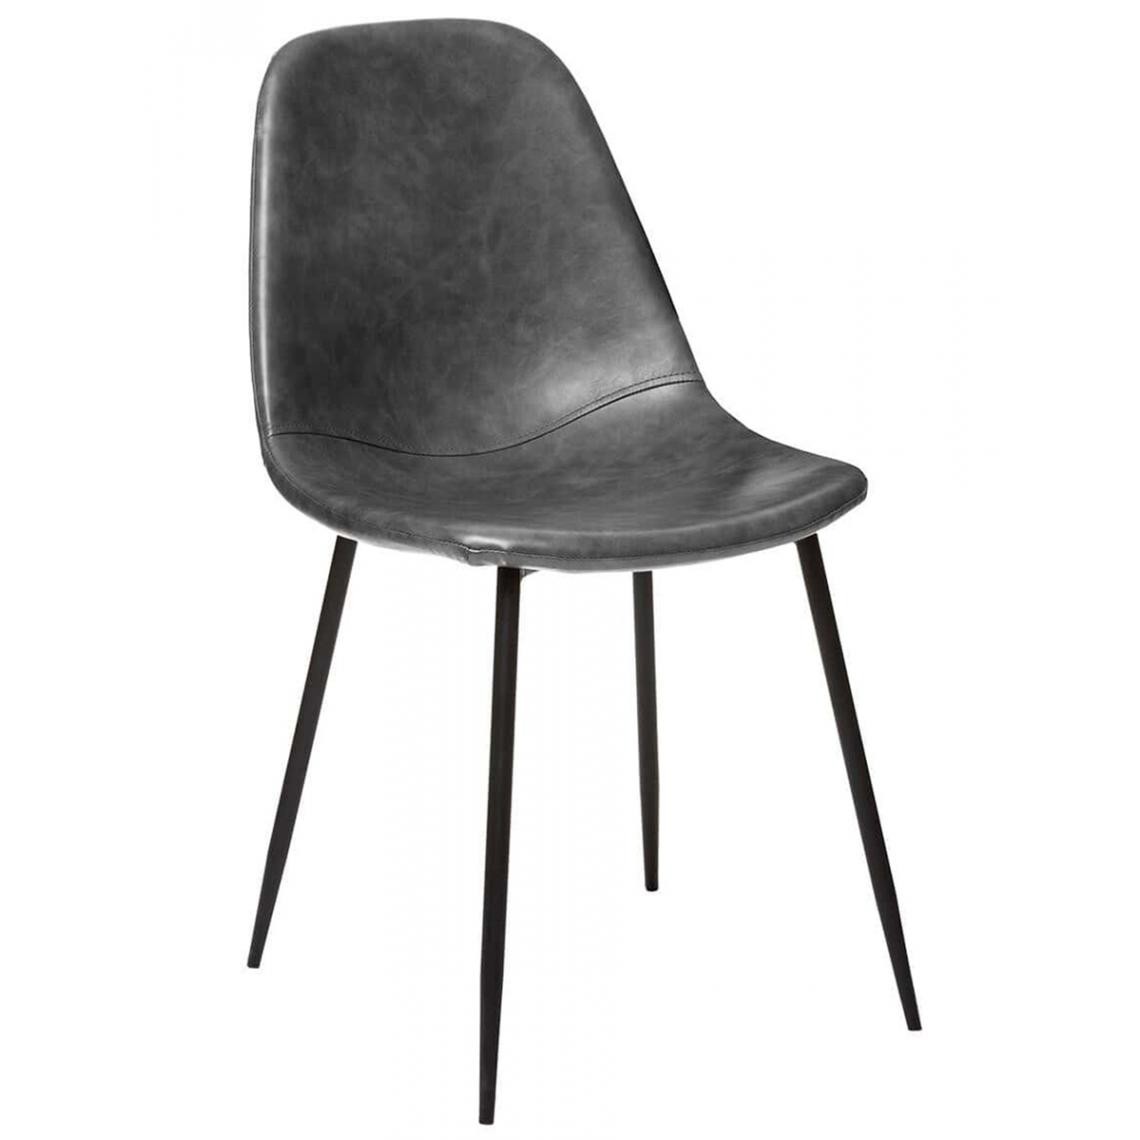 Pegane - Lot de 4 chaises en bois coloris gris - Longueur 52.5 x Profondeur 43.5 x Hauteur 82 cm - Chaises